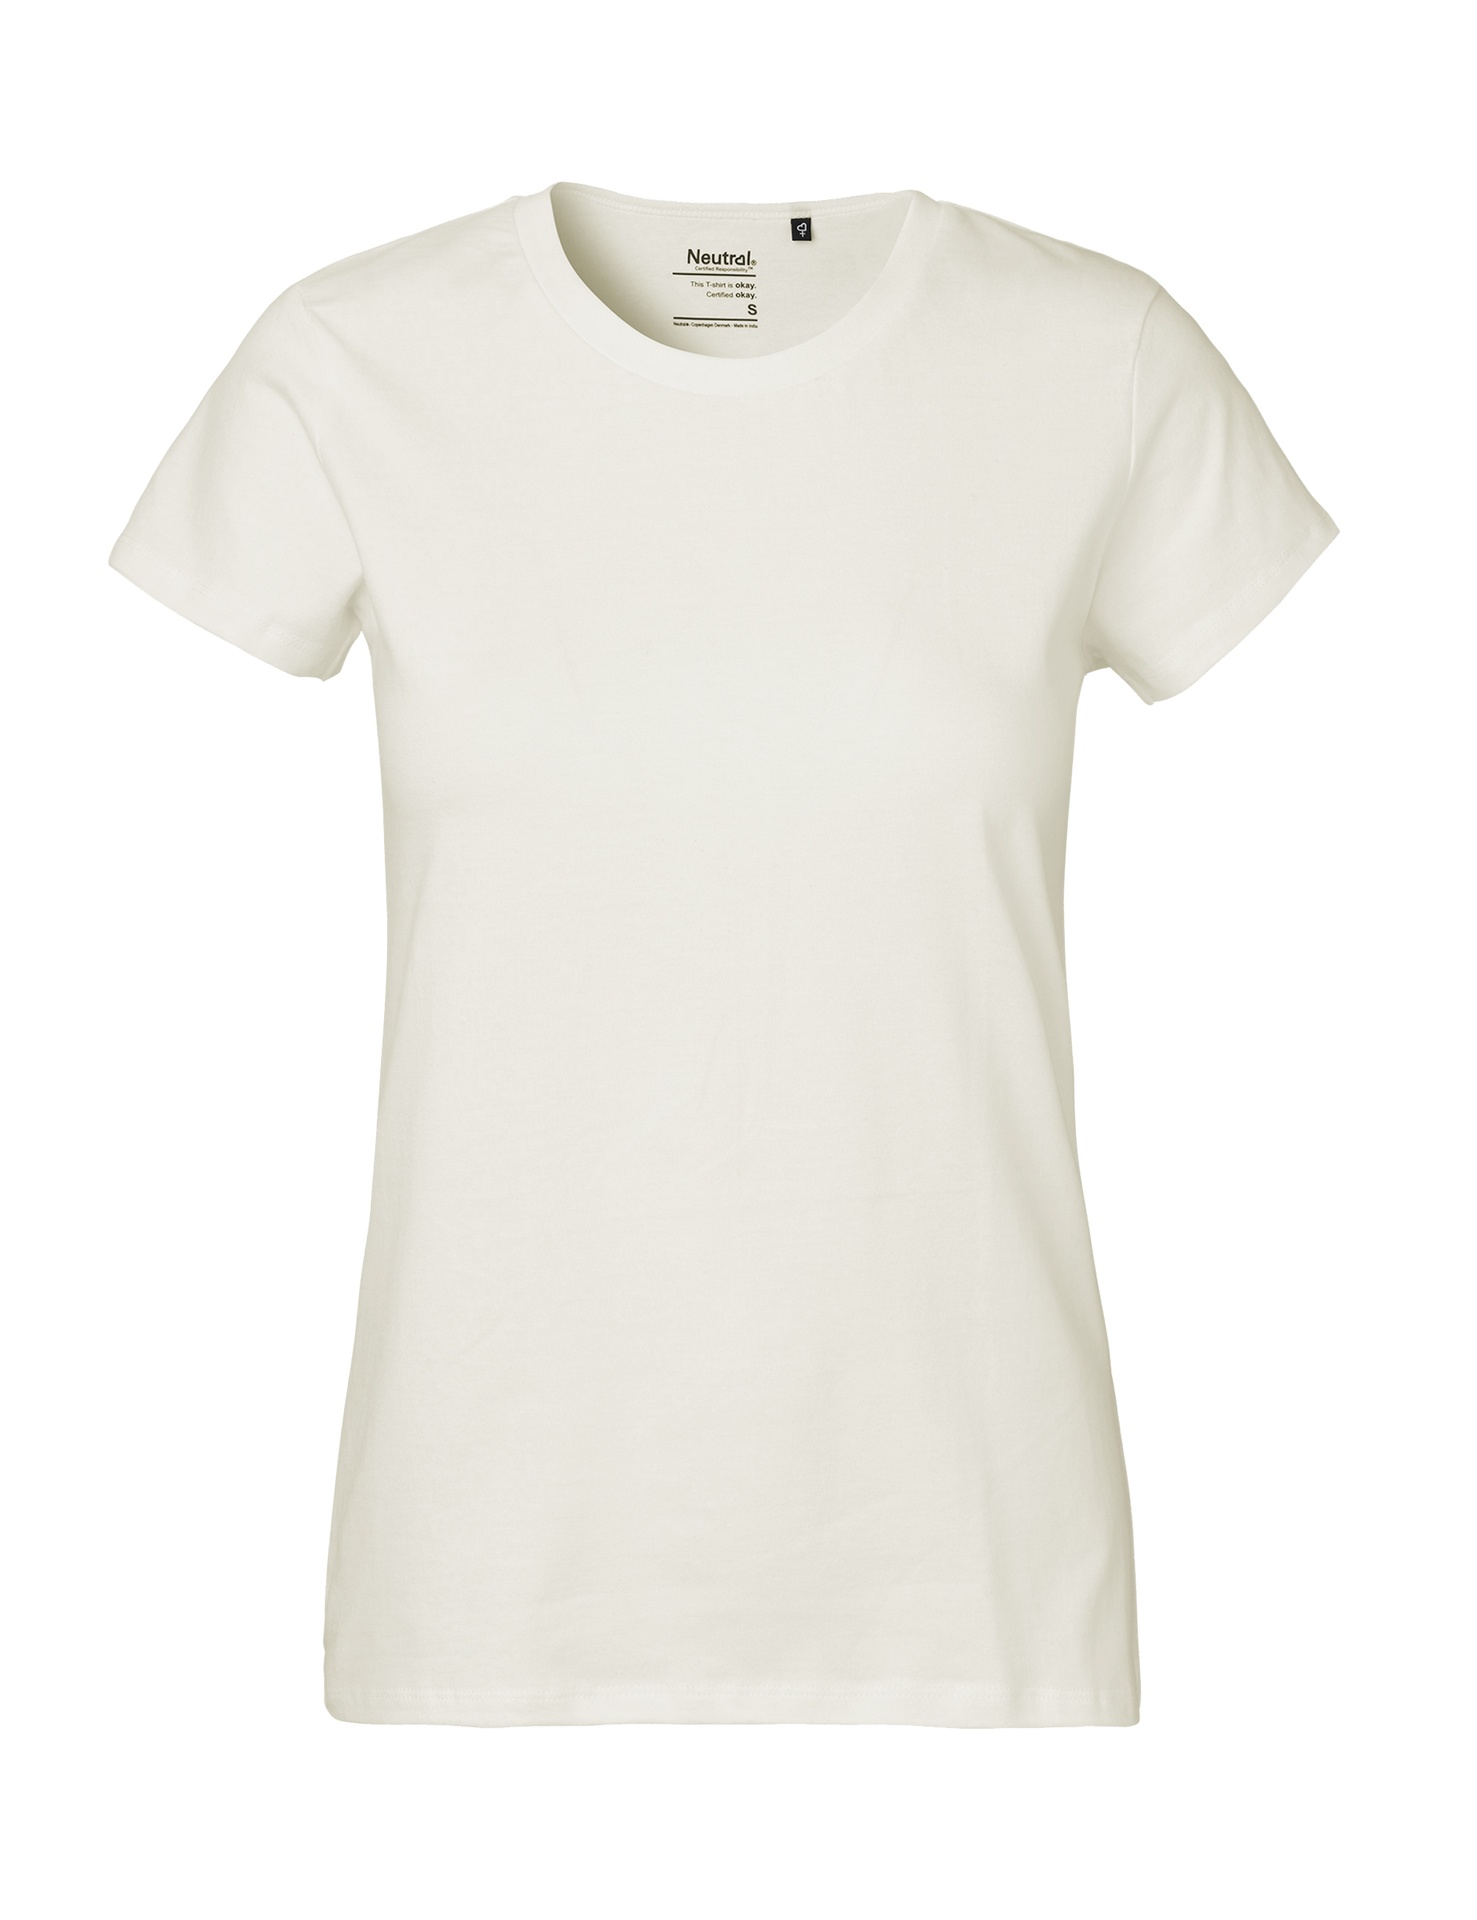 [PR/03989] Ladies Classic T-Shirt (Nature 00, XL)